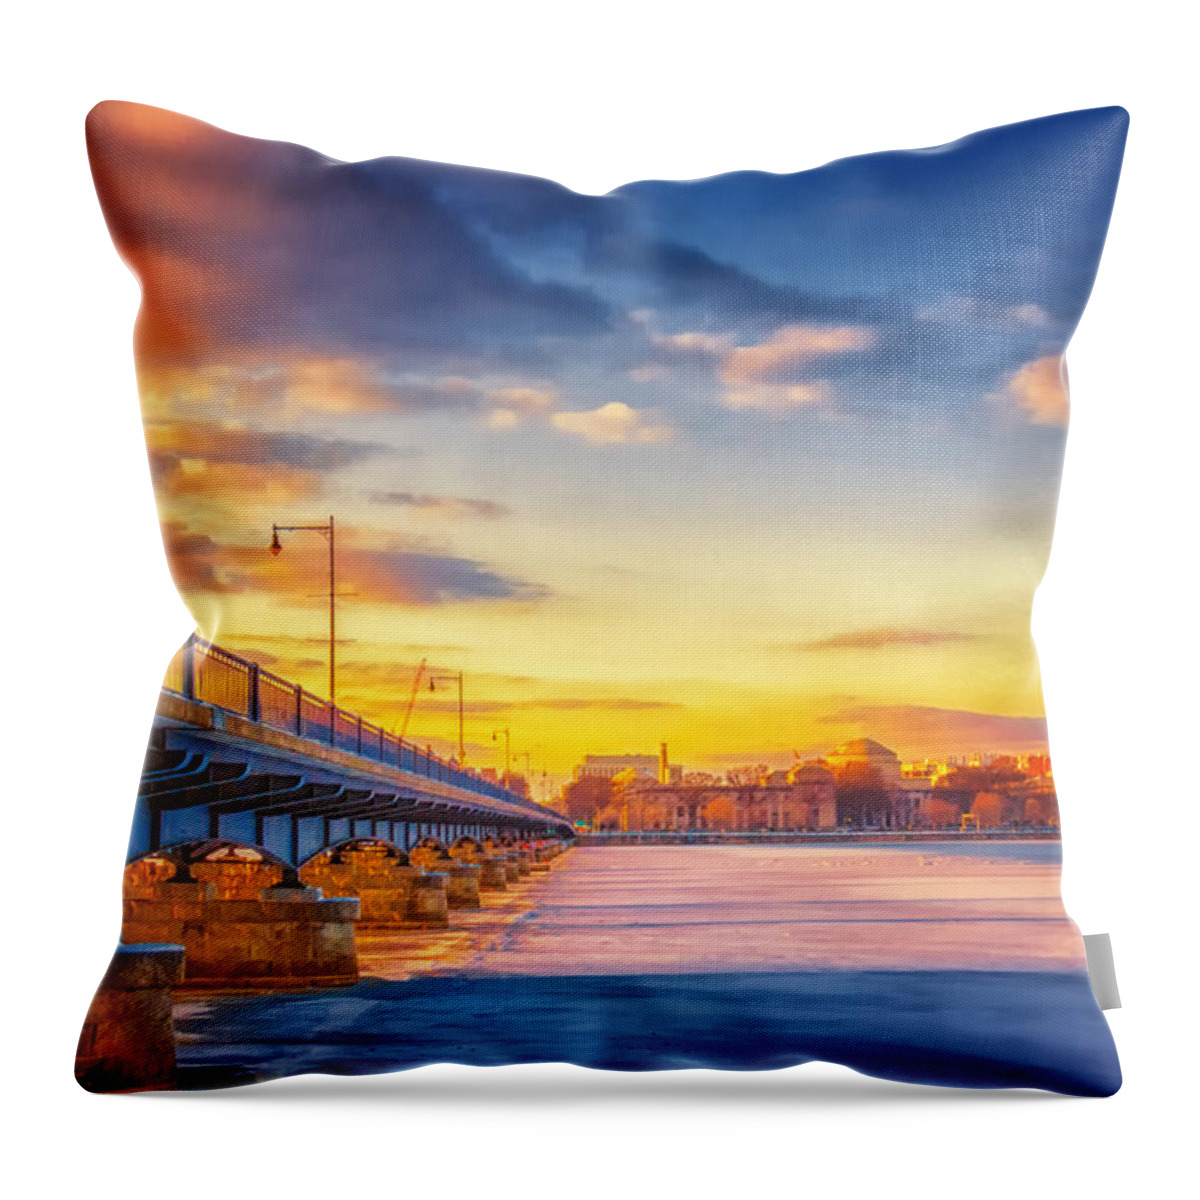 Boston Throw Pillow featuring the photograph Boston's Golden Bridge to MIT by Sylvia J Zarco